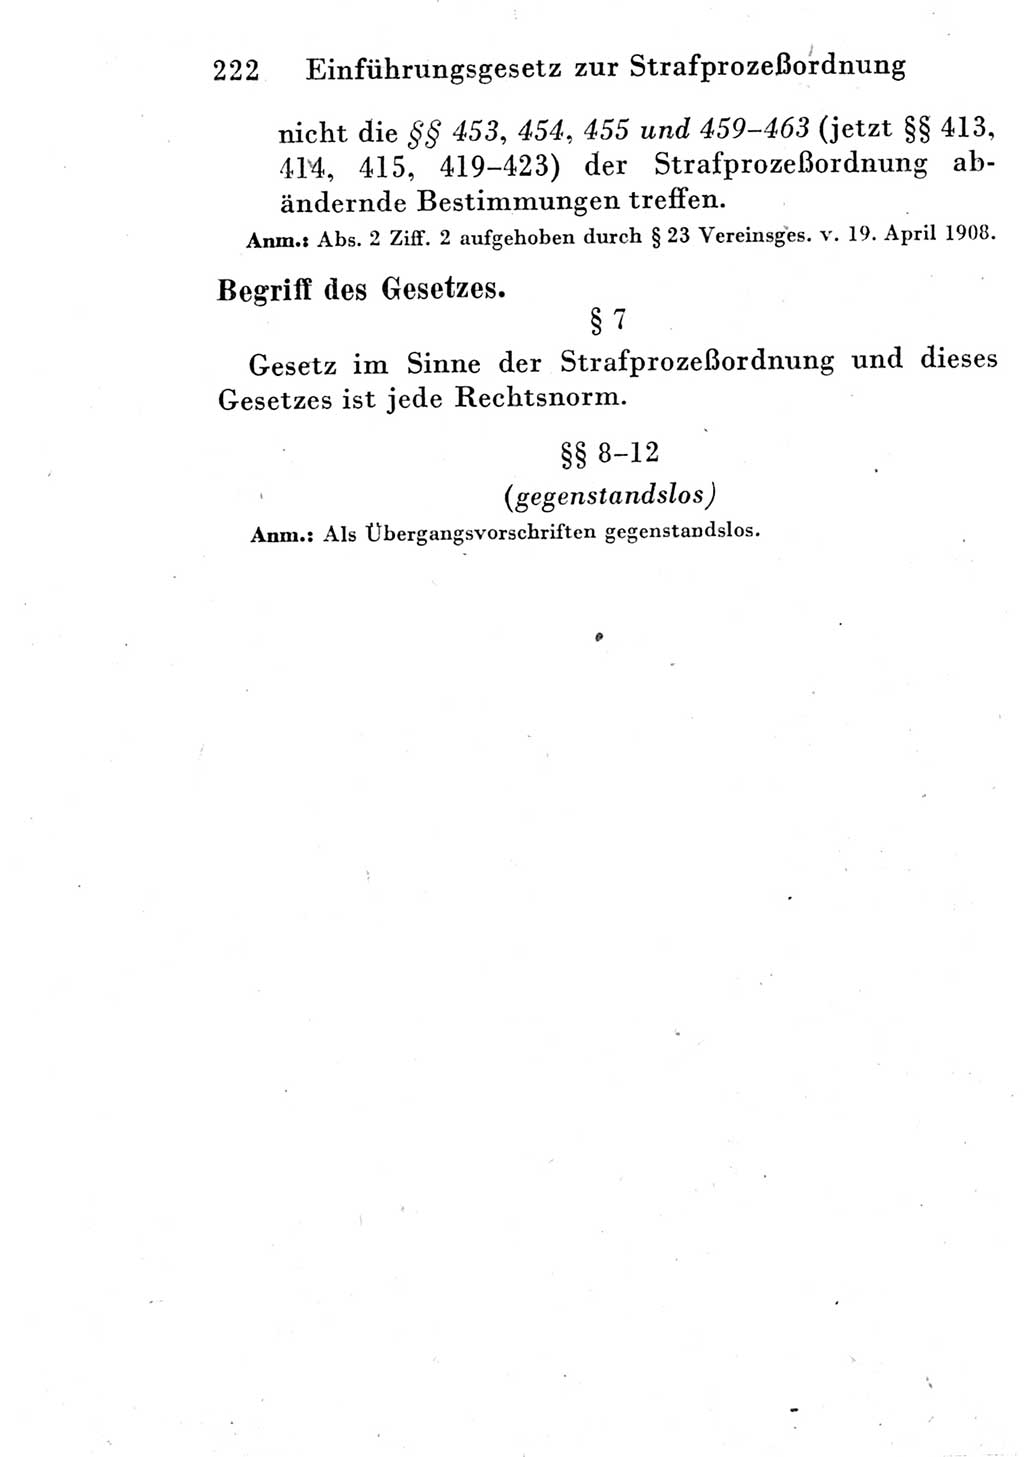 Strafprozeßordnung (StPO), Gerichtsverfassungsgesetz (GVG) und zahlreiche Nebengesetze der Deutschen Demokratischen Republik (DDR) 1950, Seite 222 (StPO GVG Ges. DDR 1950, S. 222)